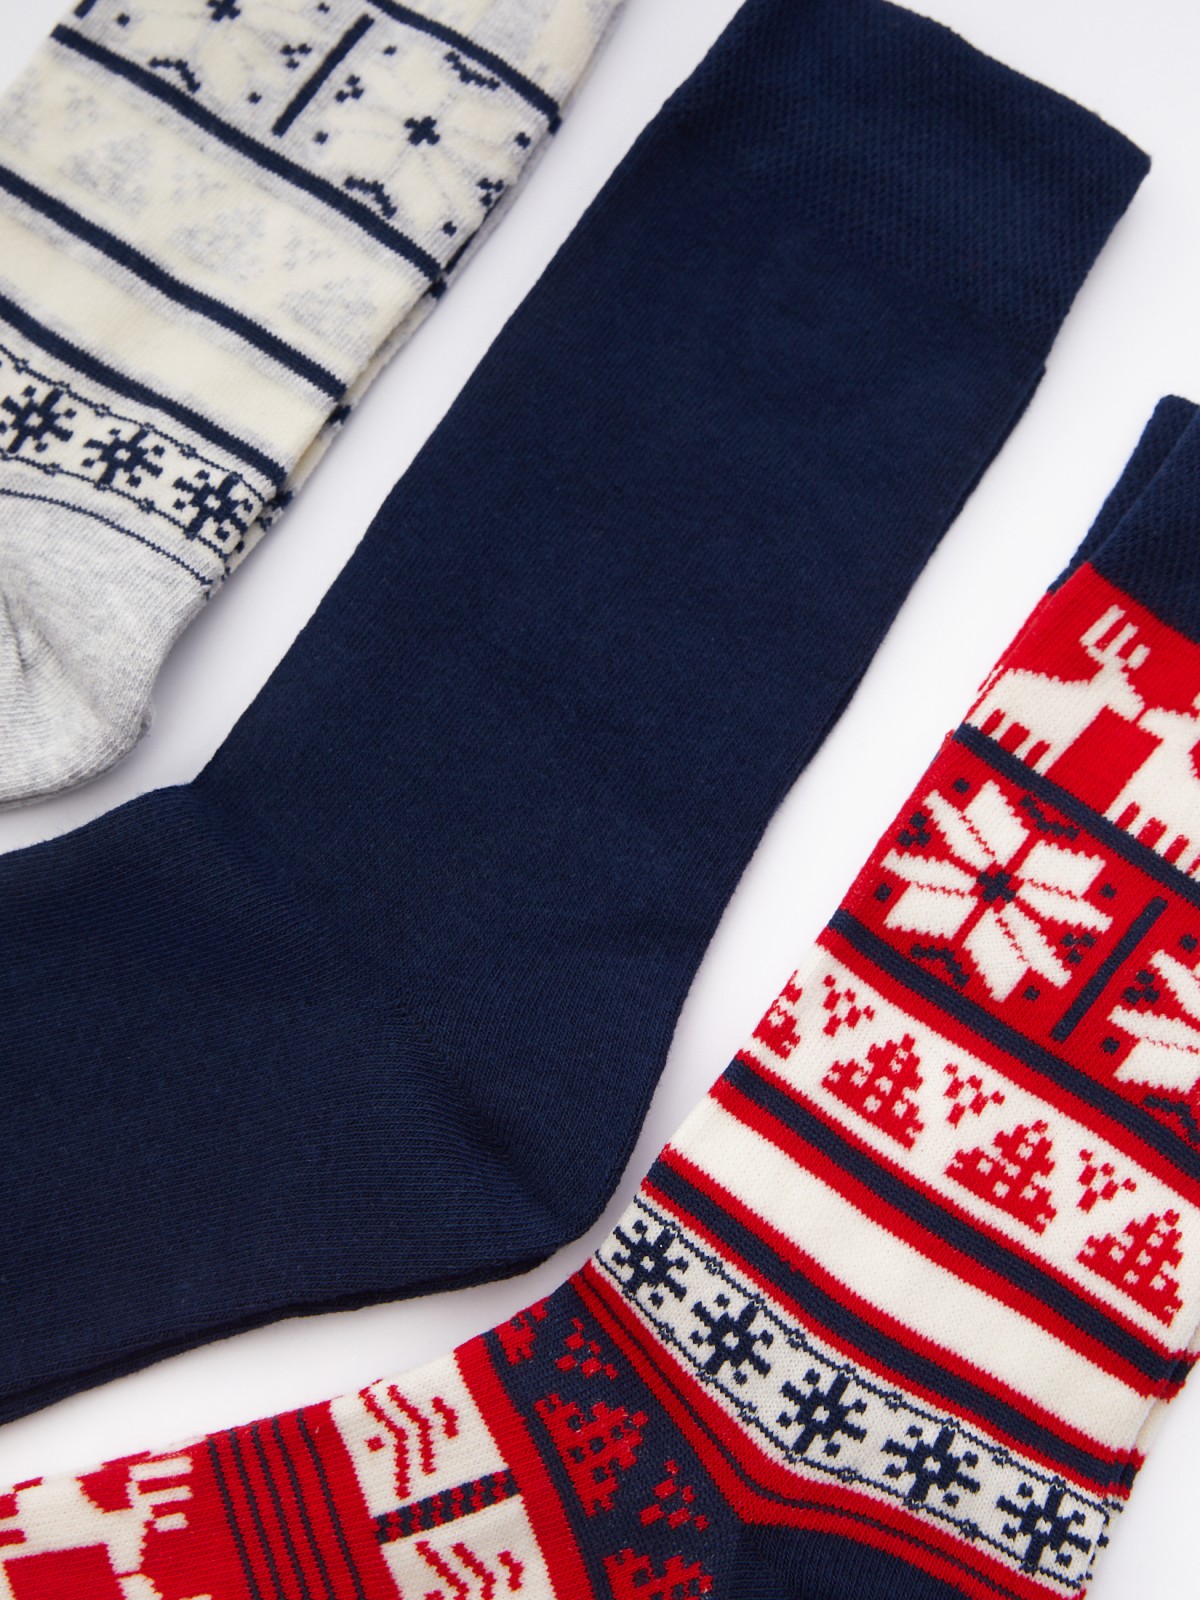 Набор новогодних носков (3 пары в комплекте) zolla 012439962025, цвет темно-синий, размер 25-27 - фото 2